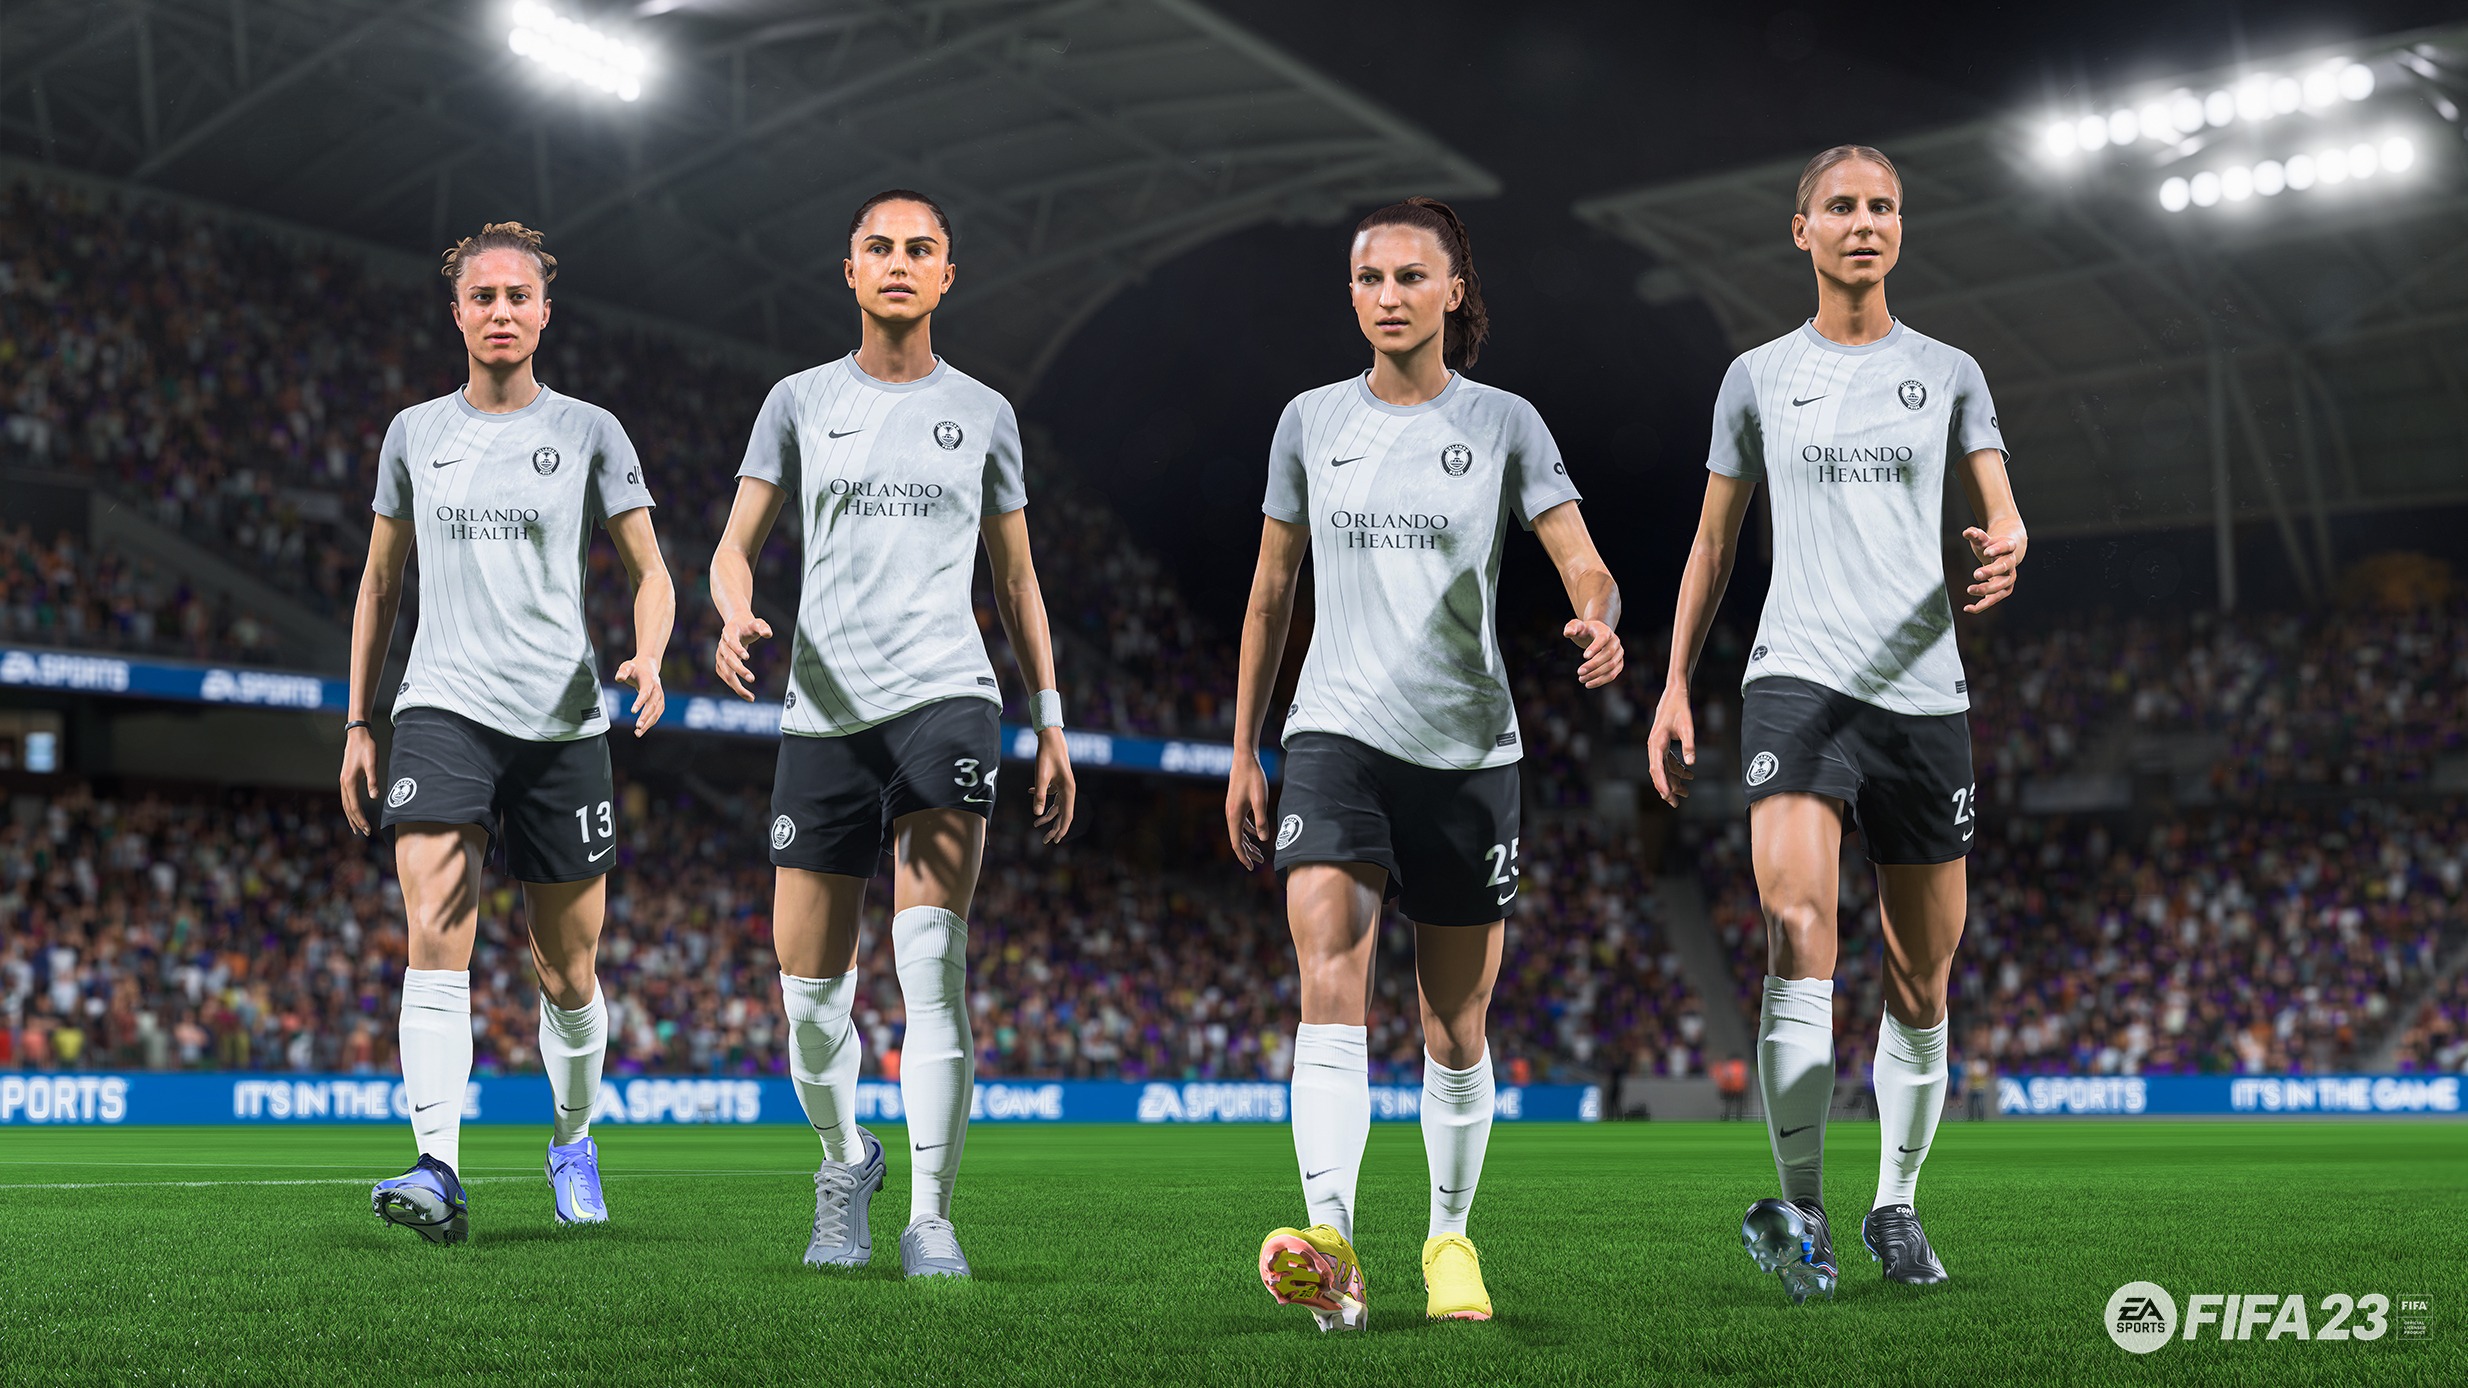 Suntem în joc: EA SPORTS FIFA 23 va prezenta pentru prima dată cluburile Orlando Pride, NWSL